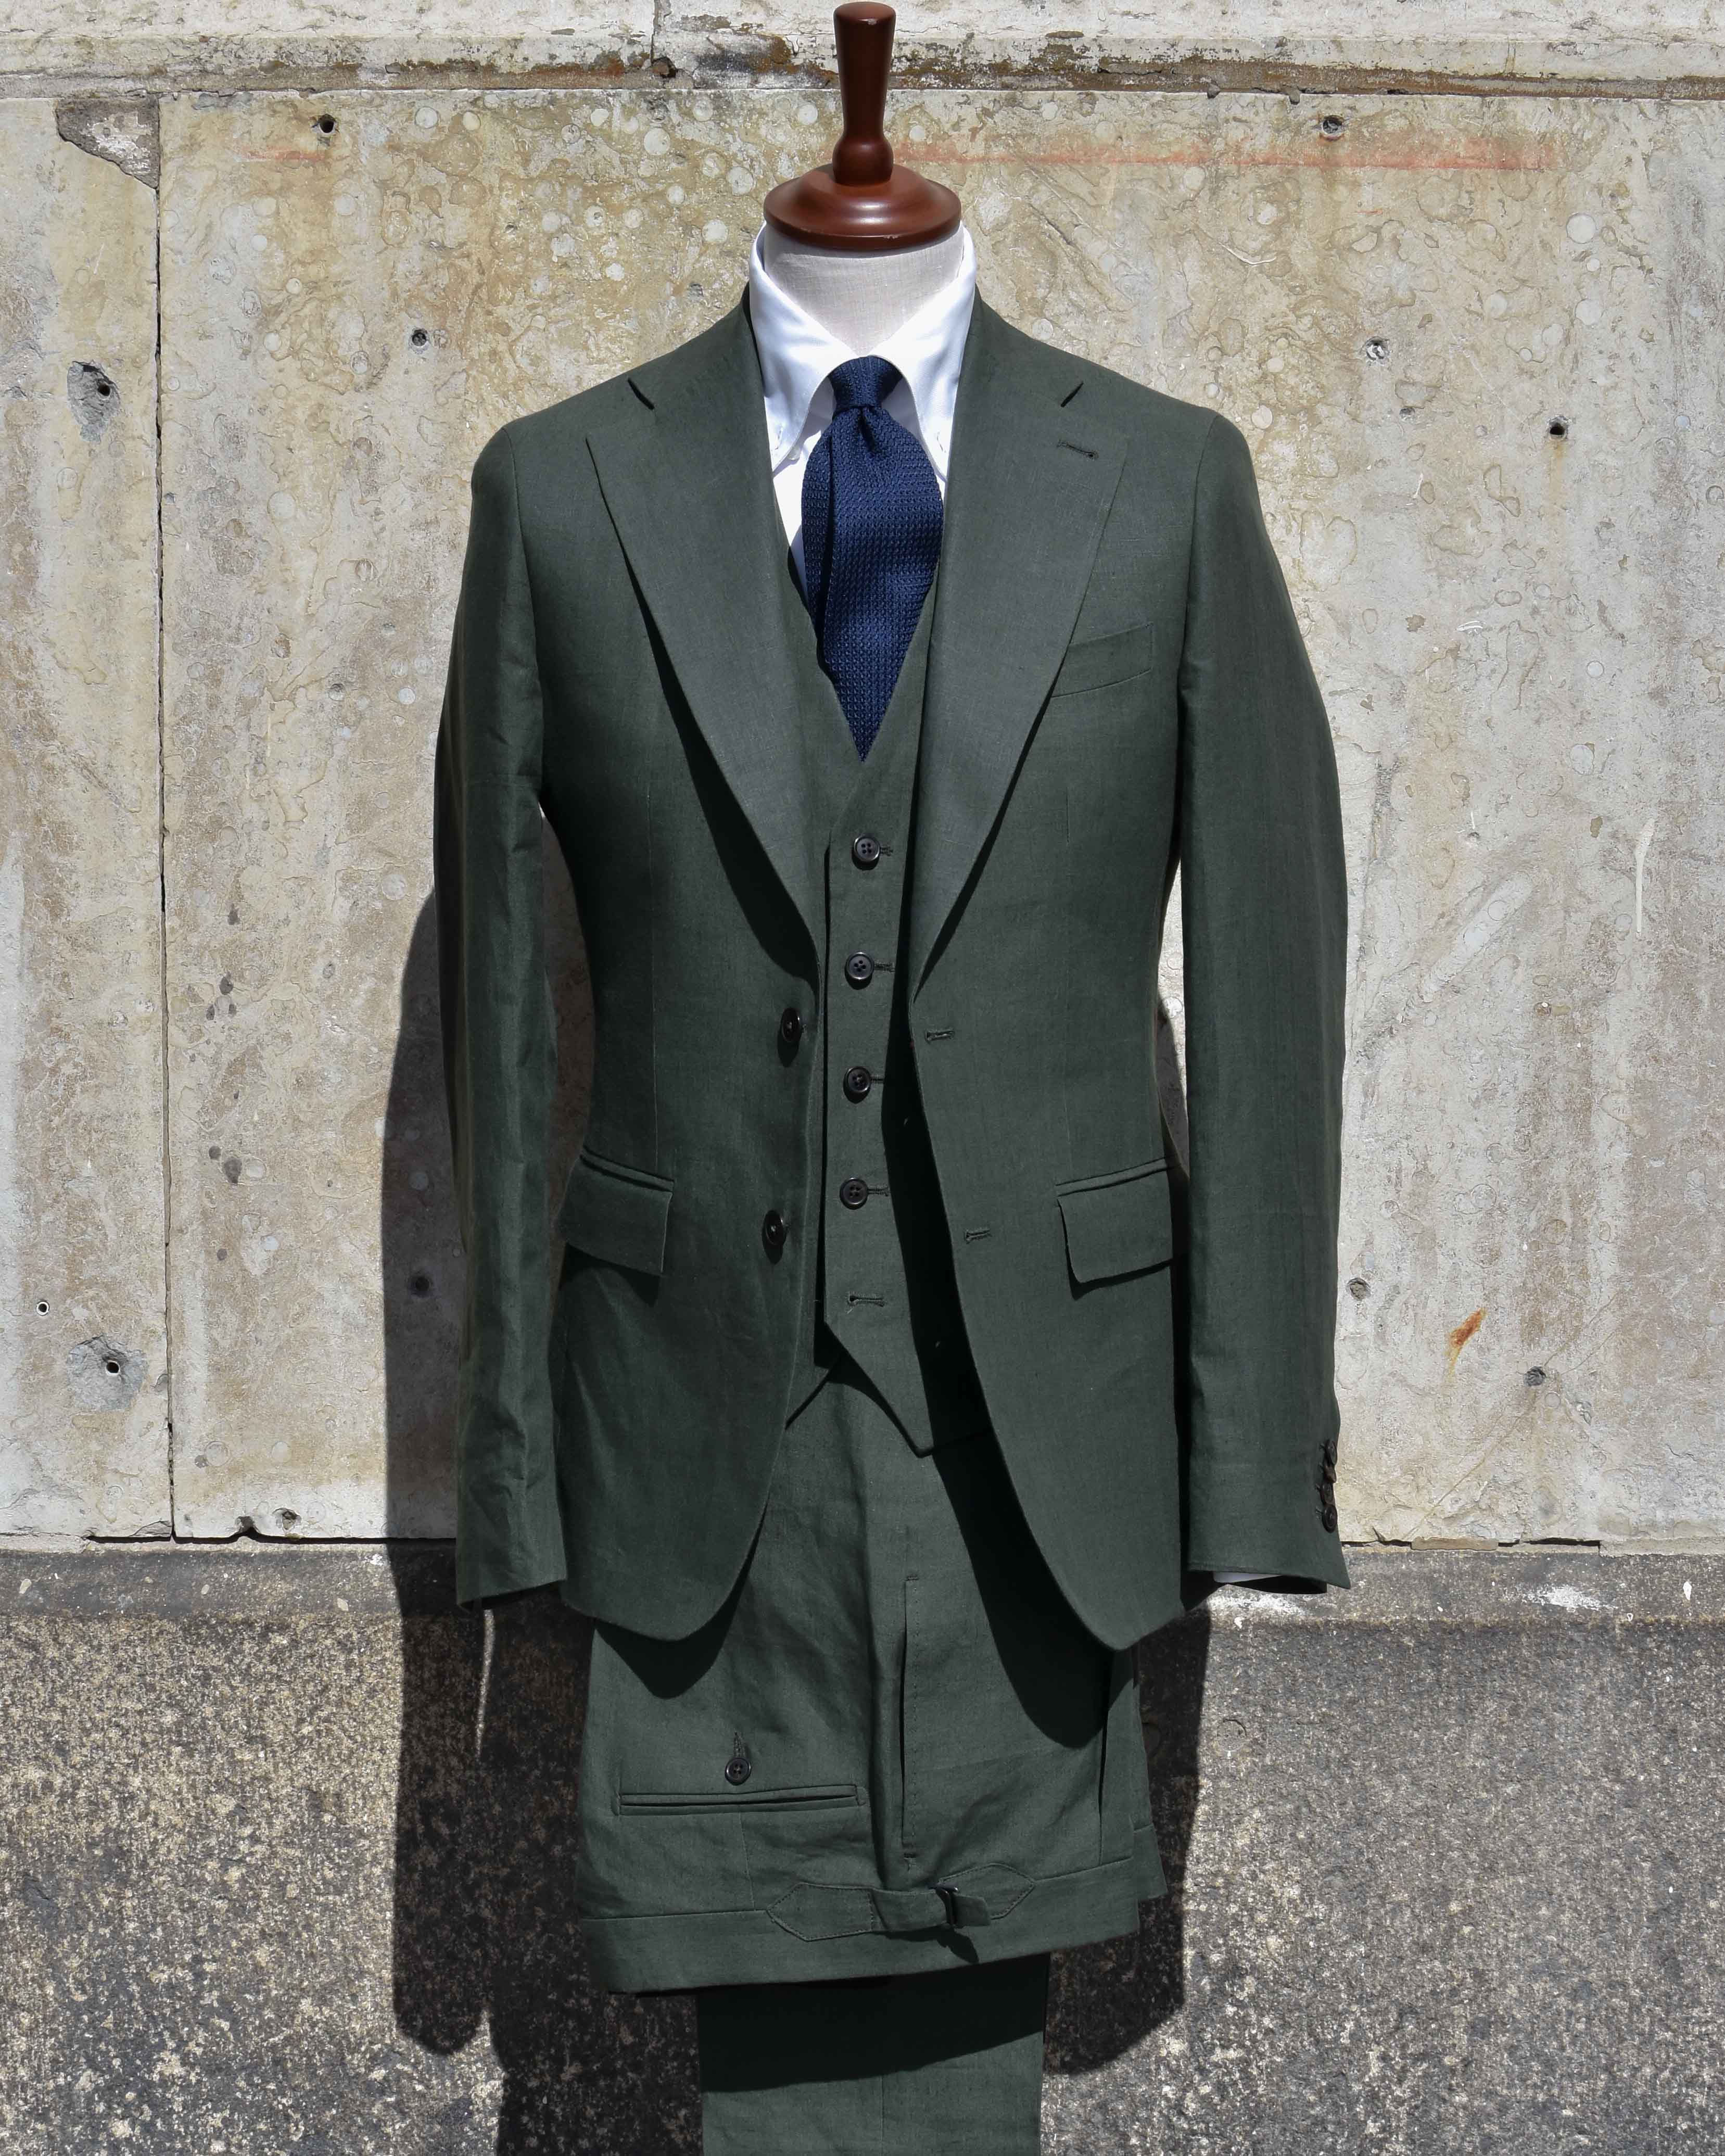 Linnen-green-3-peice-suit-3-delad-kostym